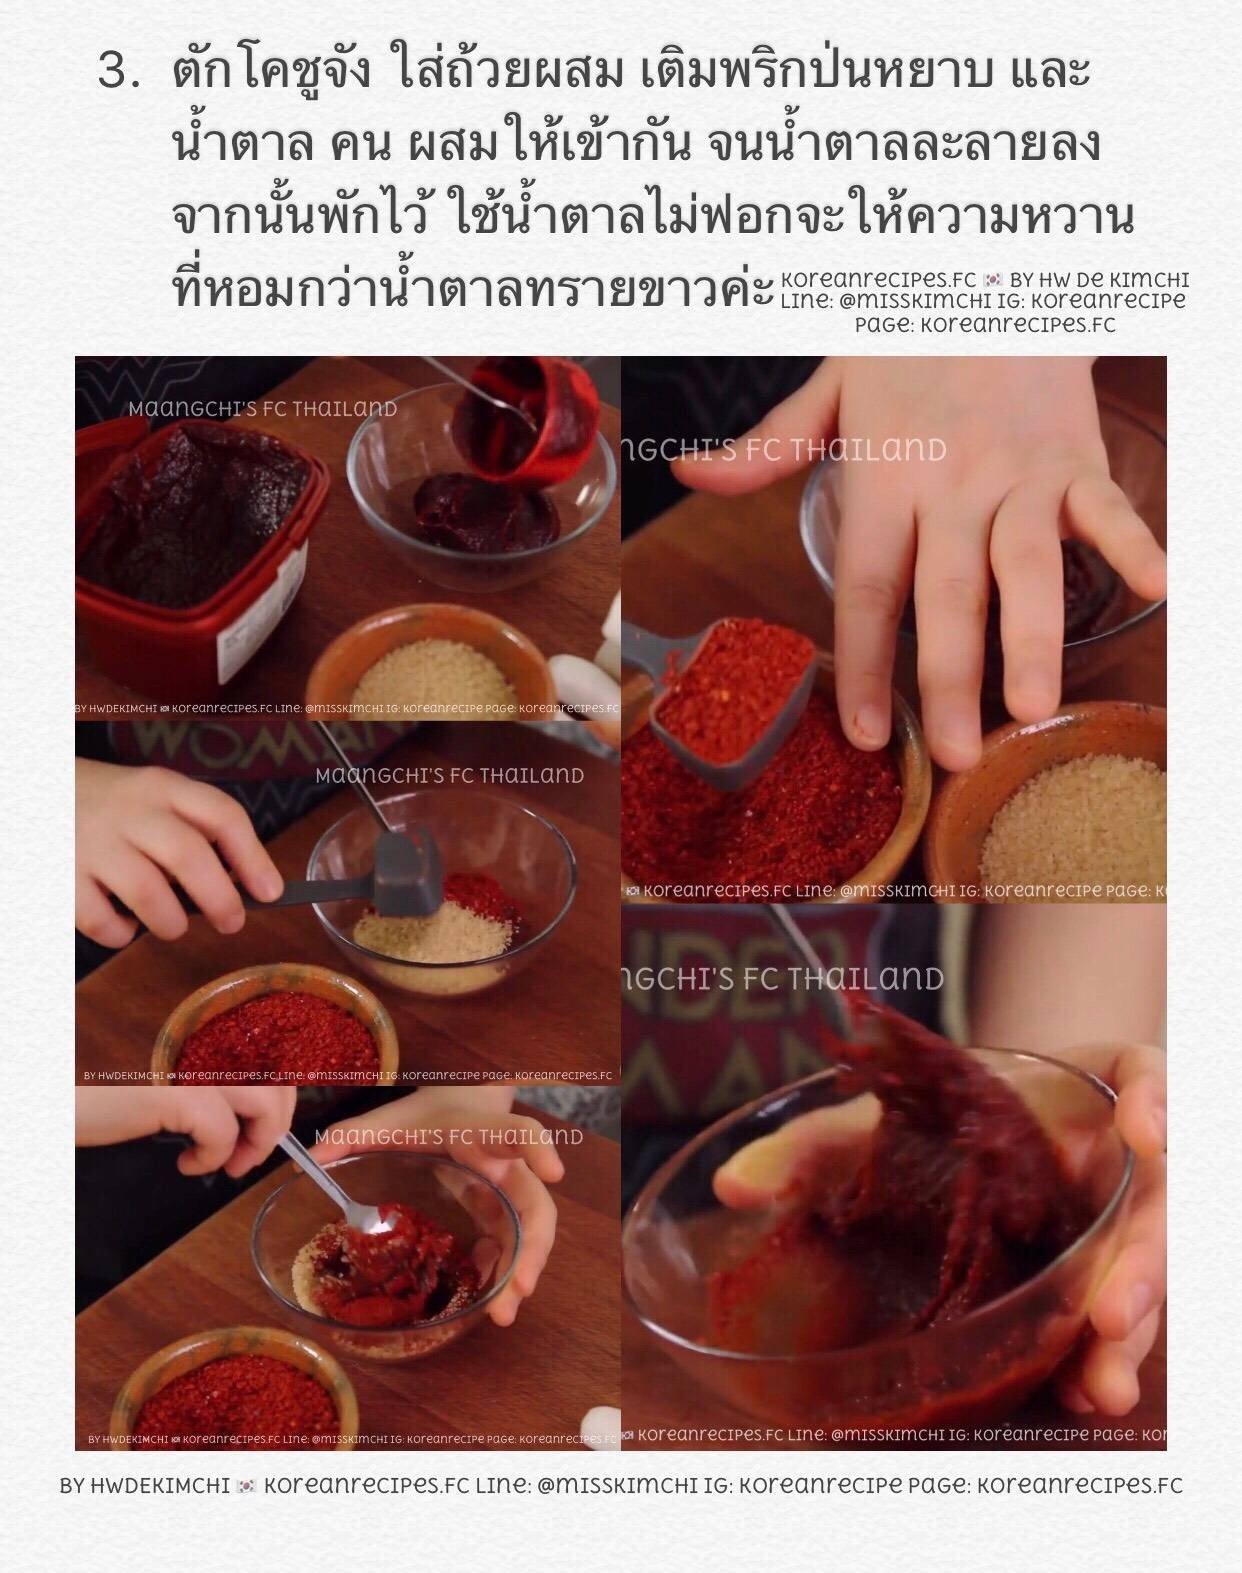 떡볶이 (Tteokbokki/ต๊อกบกกี) Spicy Rice Cake